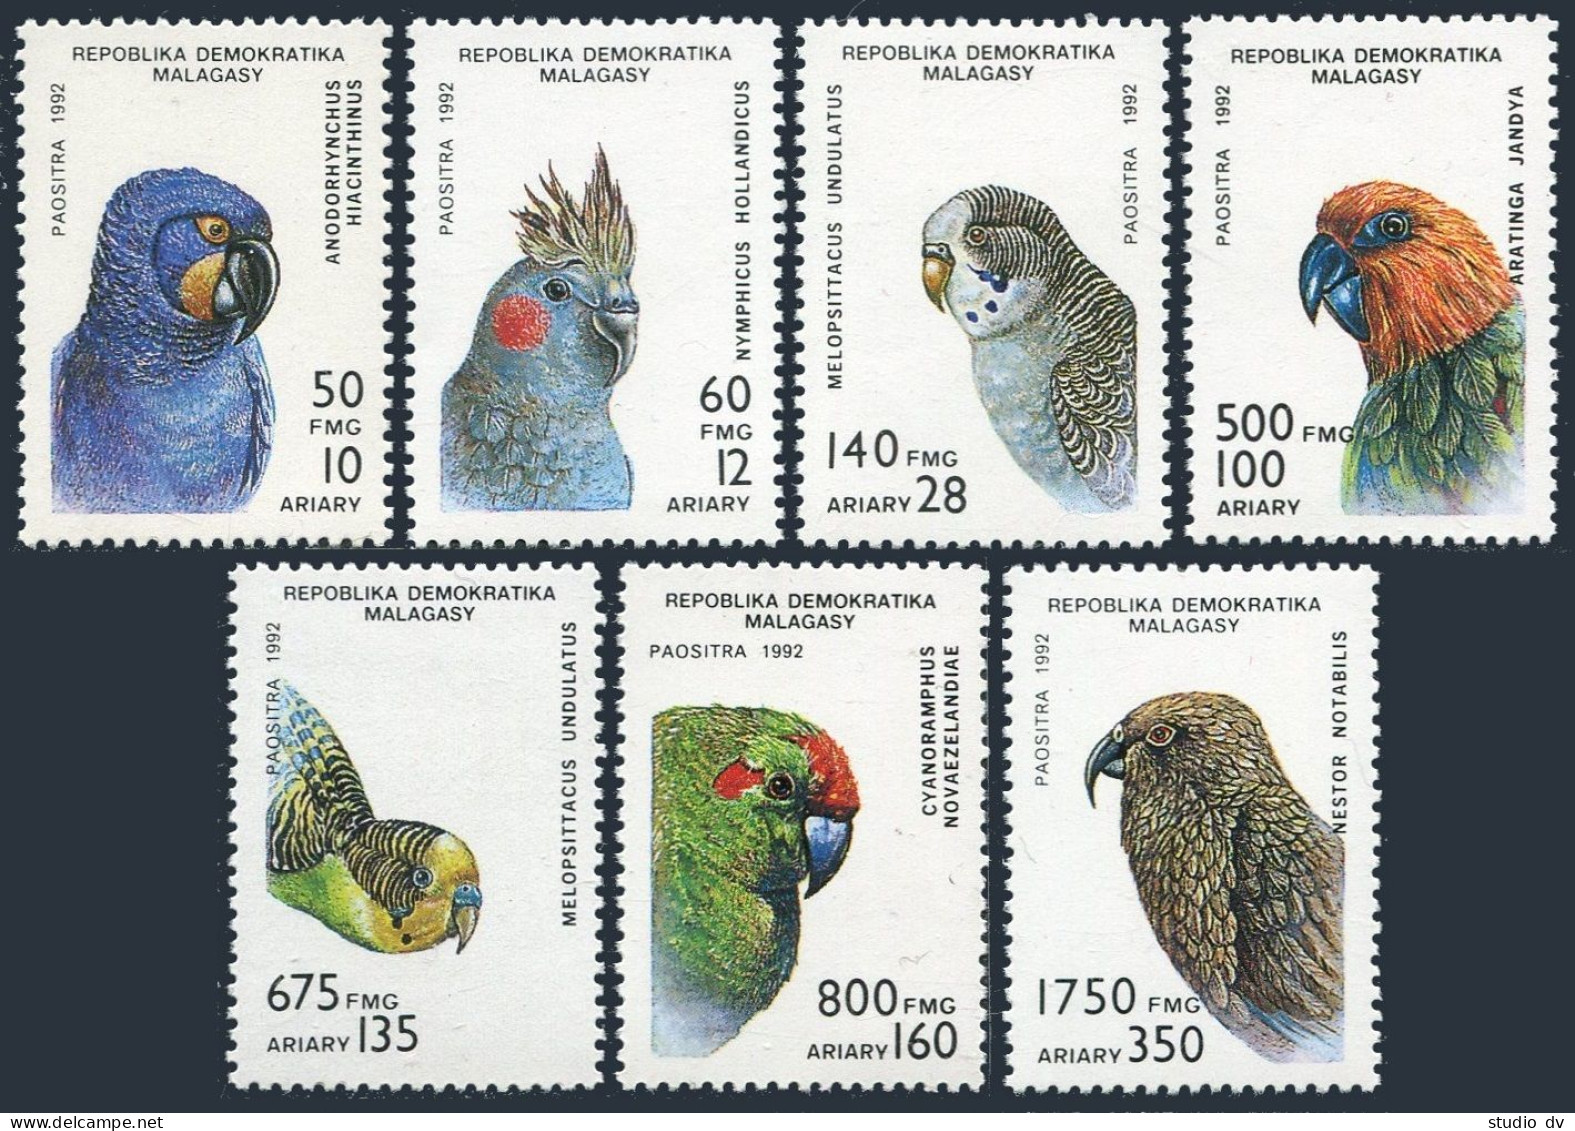 Malagasy 1114-1120,1121,MNH. Michel 1423-1429, Bl.209. Birds 1993. Parrots. - Madagaskar (1960-...)